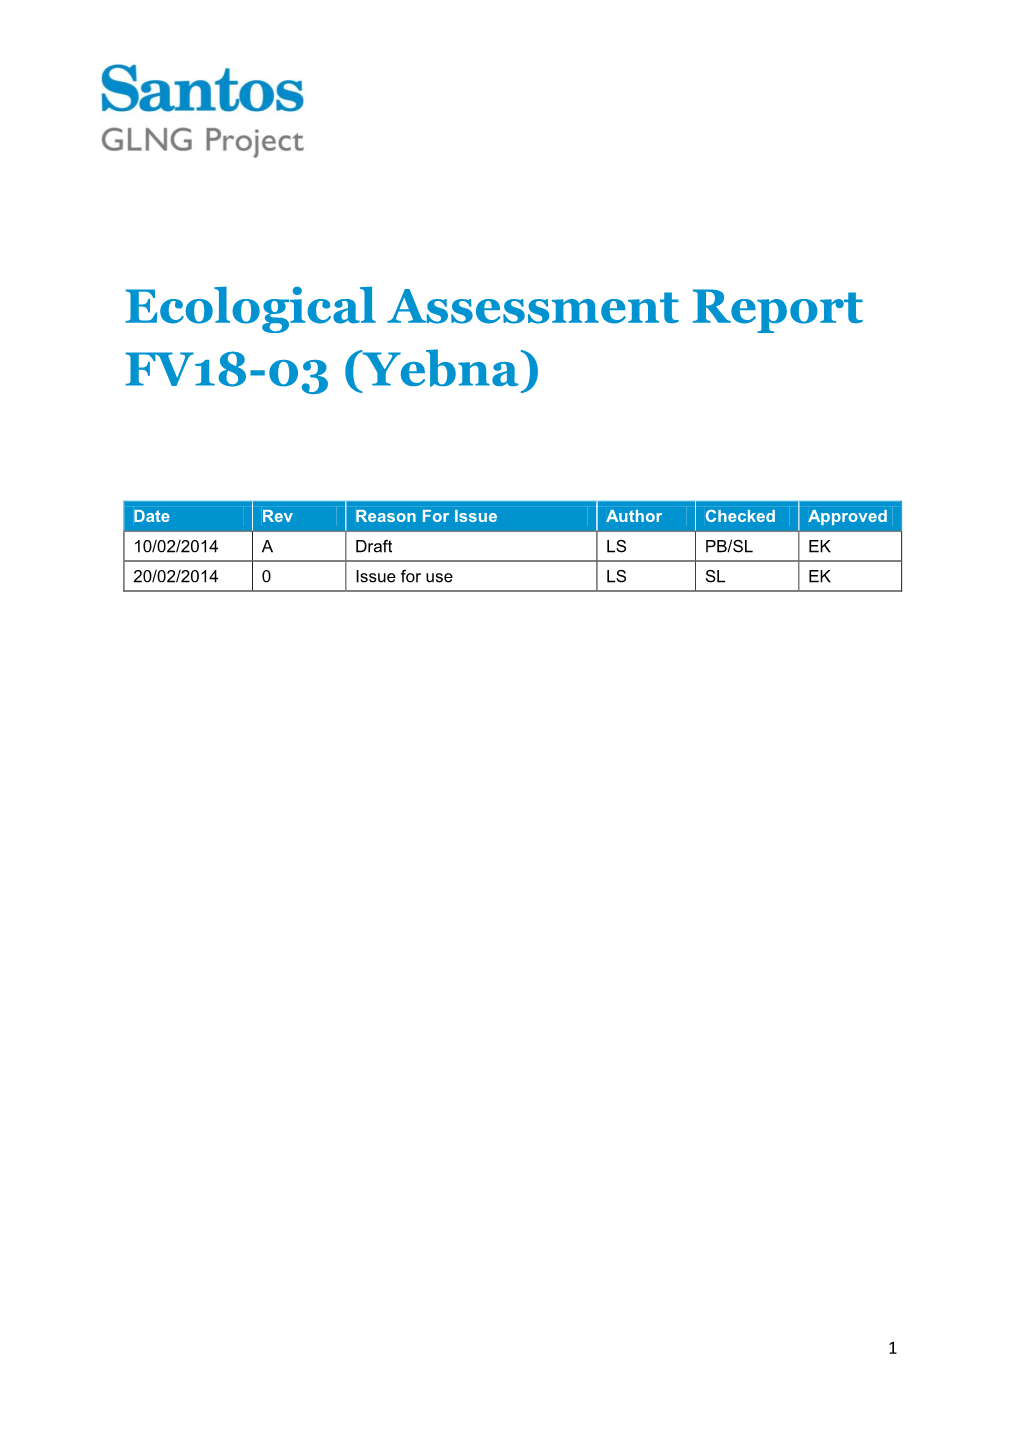 Ecological Assessment Report FV18-03 (Yebna)